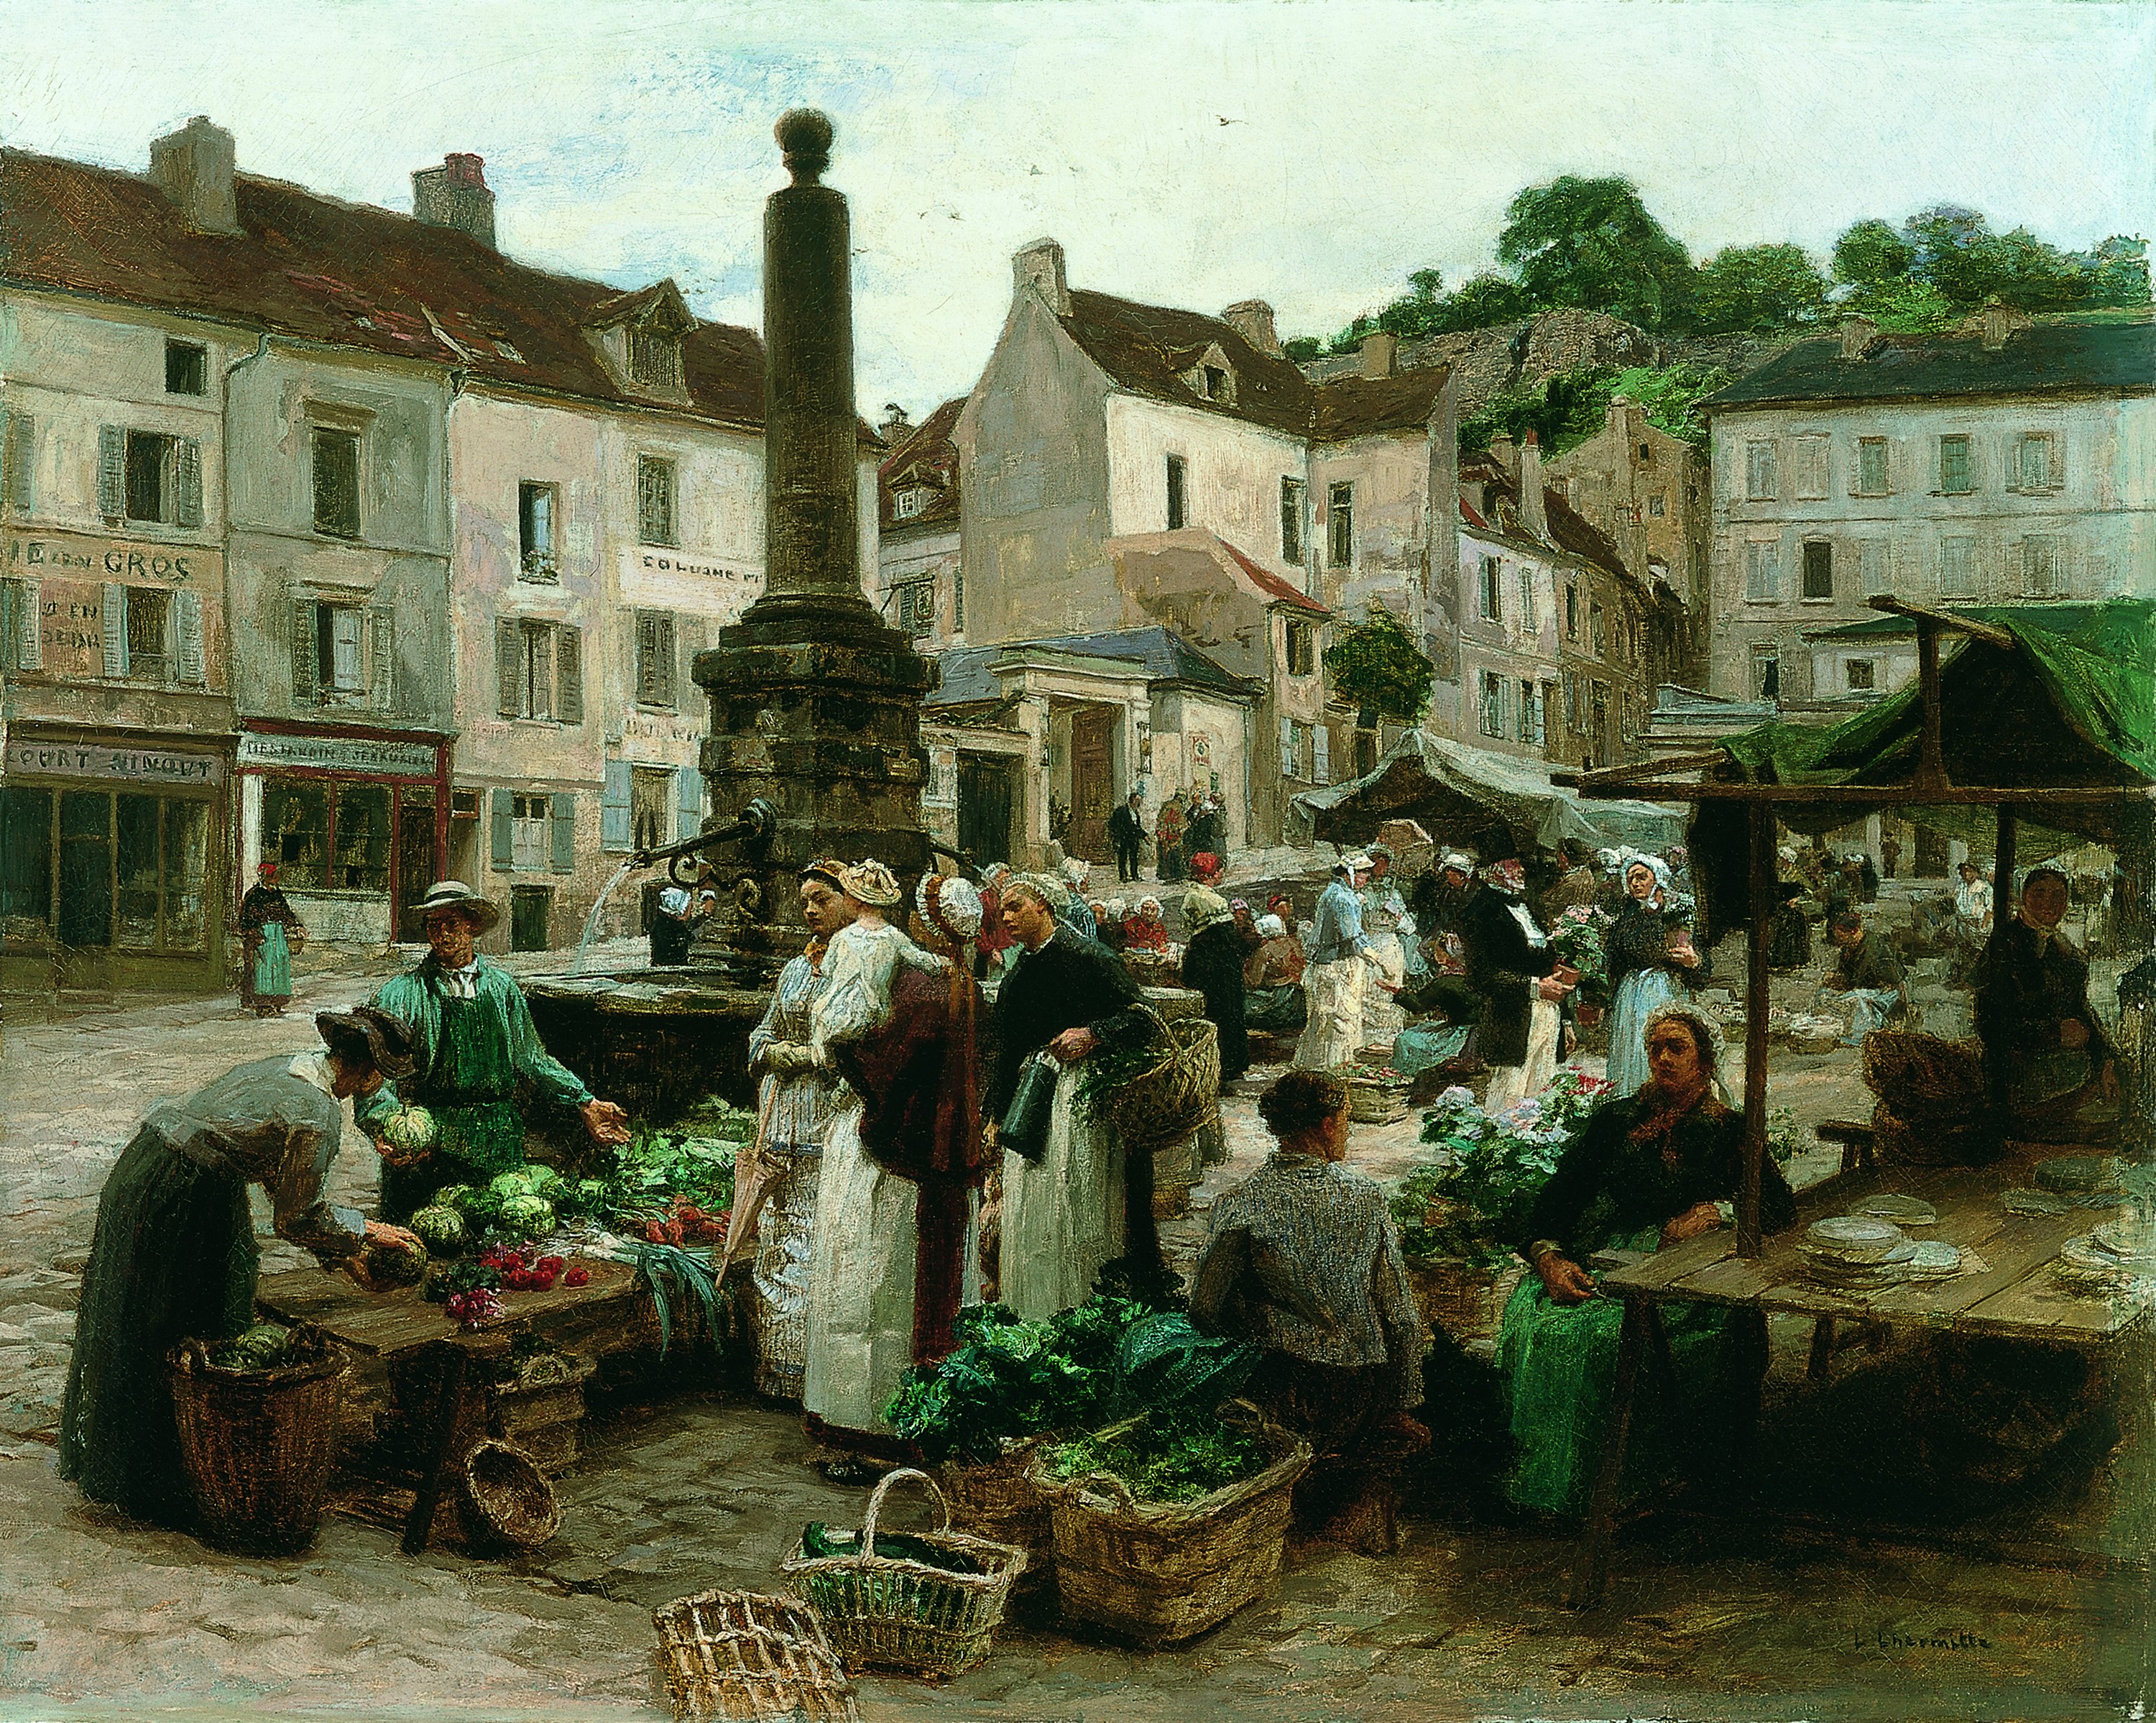 Le marché de Château-Thierry. El mercado de Château-Thierry, 1879